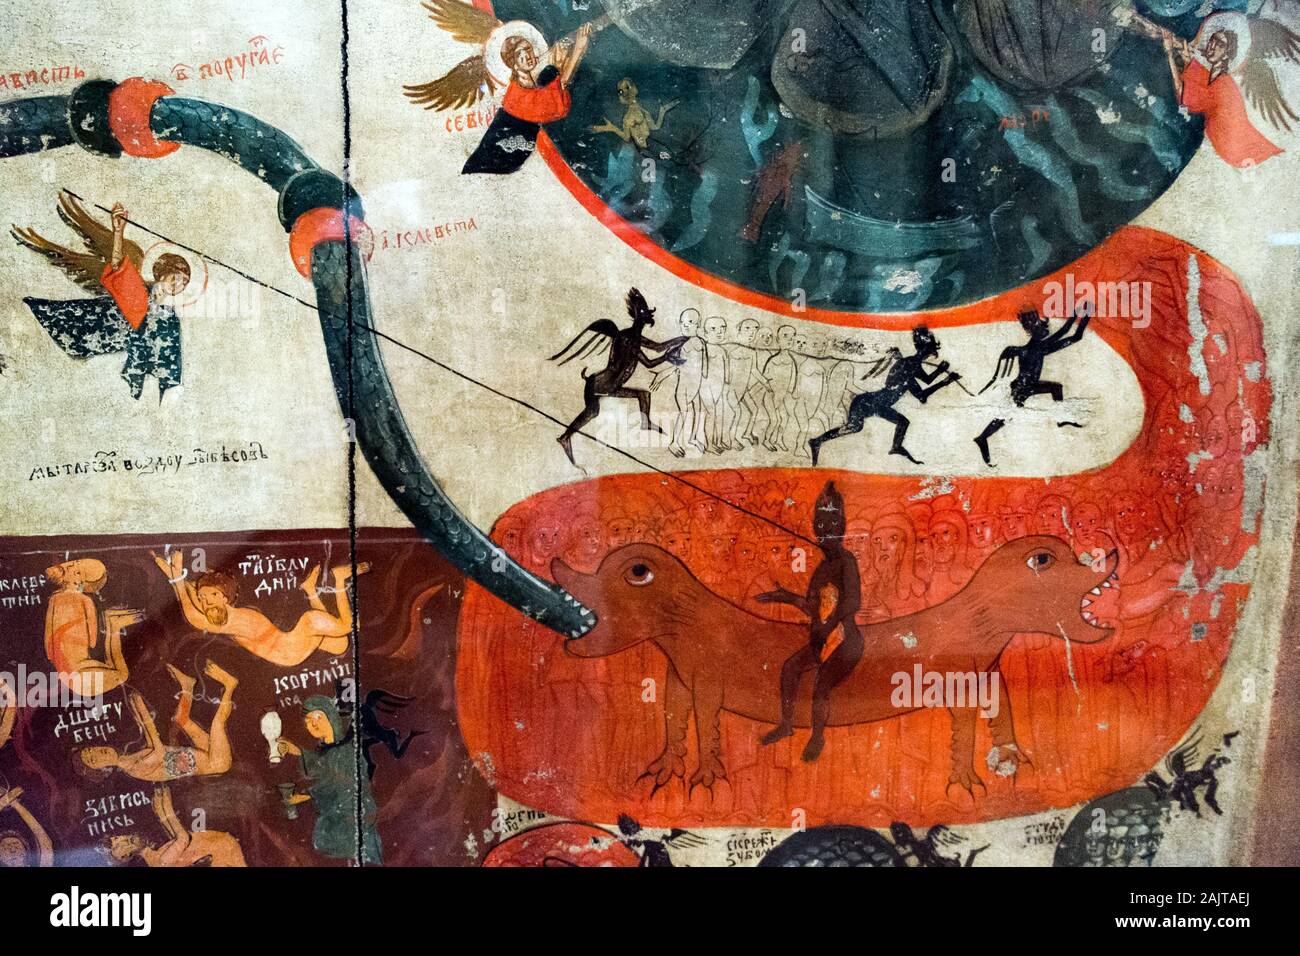 Dos paneles de una exhibición de arte ortodoxo en la Antigua República Polaca, el Palacio del Obispo, Cracovia, Polonia. Paneles muestran la sentencia en la vida de ultratumba. Foto de stock